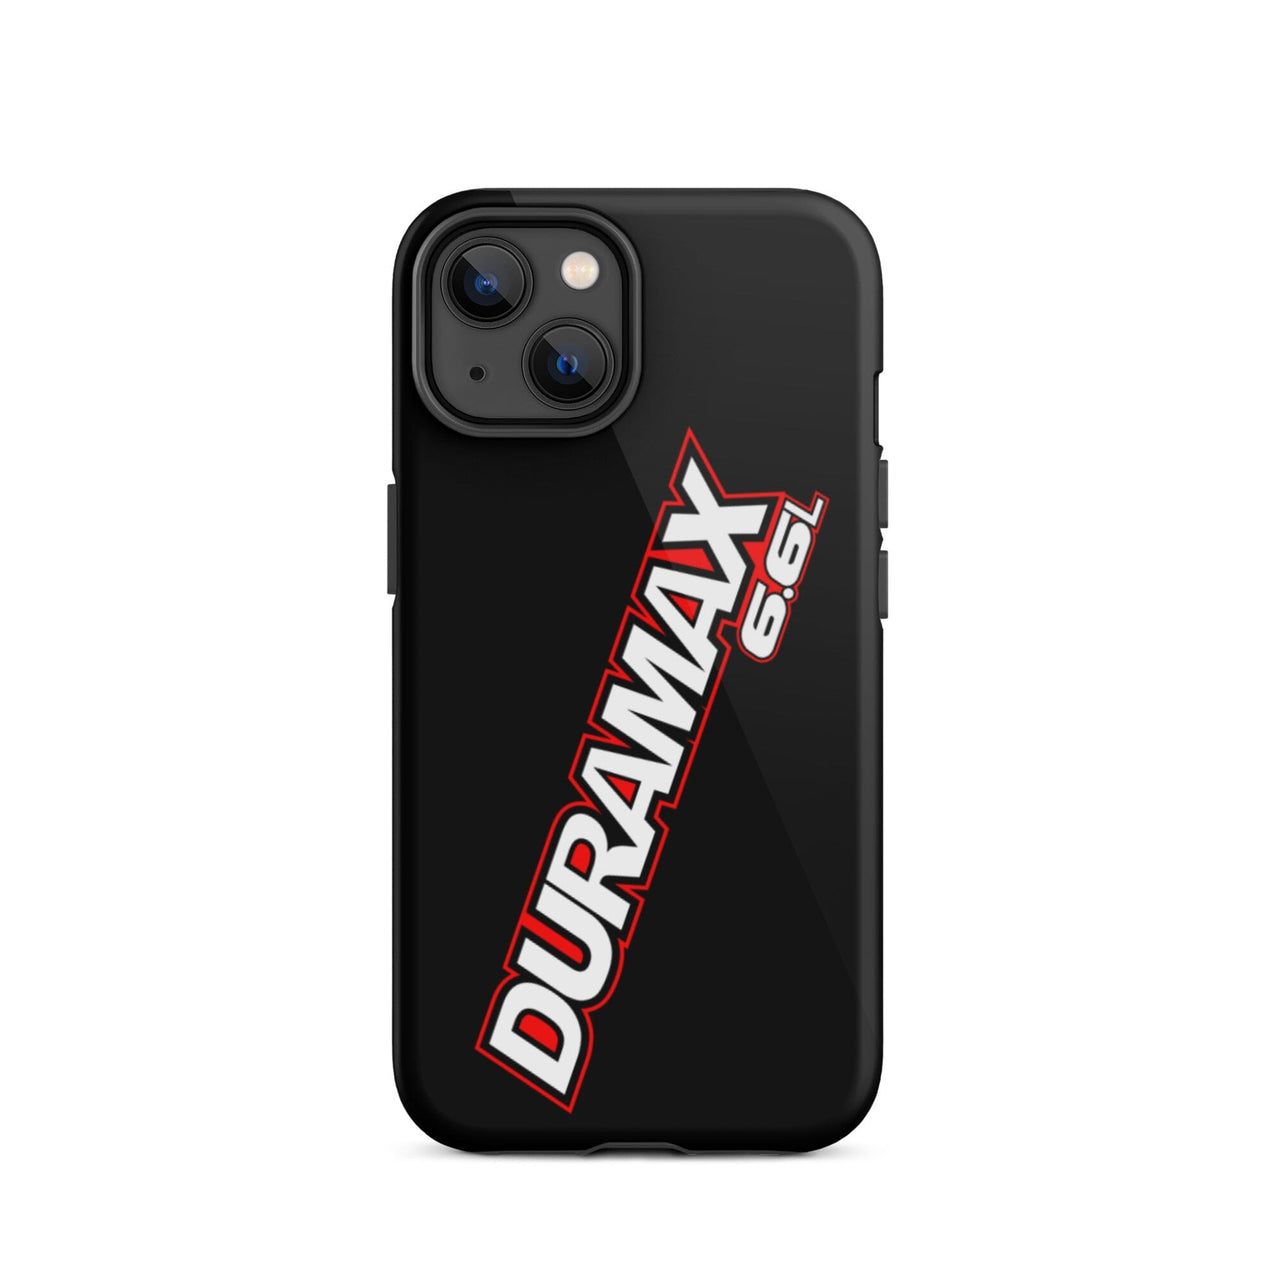 Duramax Phone Case Tough iPhone case